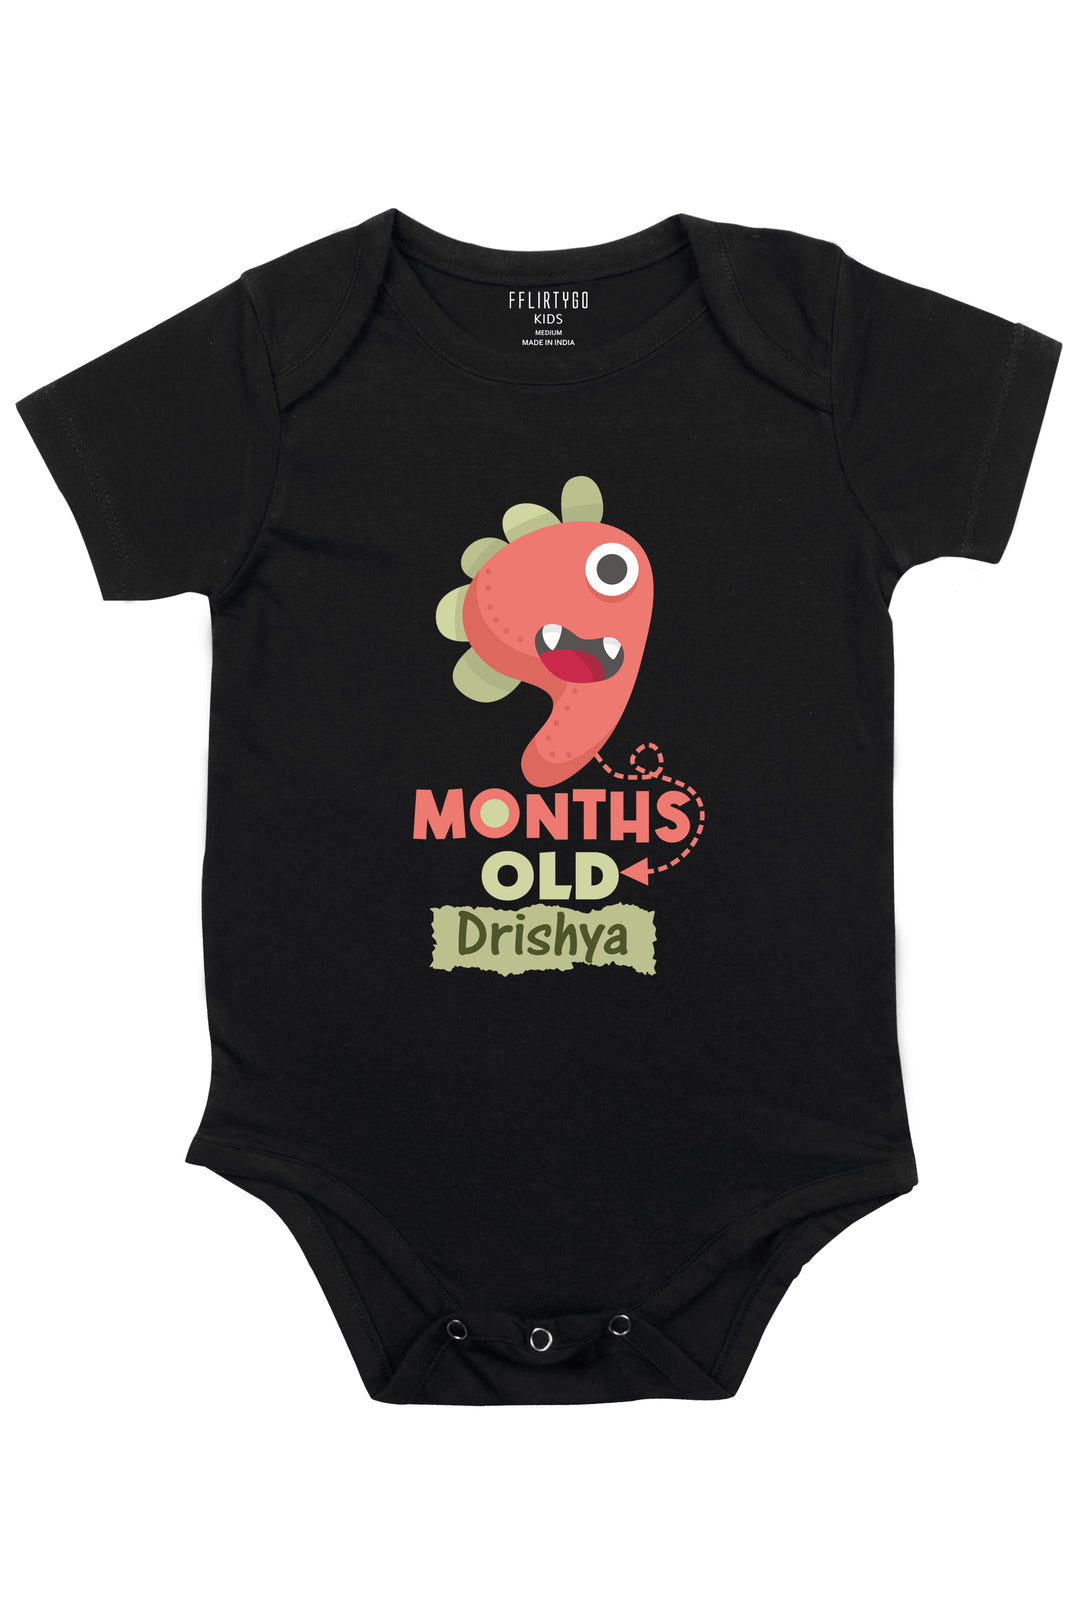 Nine Month Milestone Baby Romper | Onesies w/ Custom Name